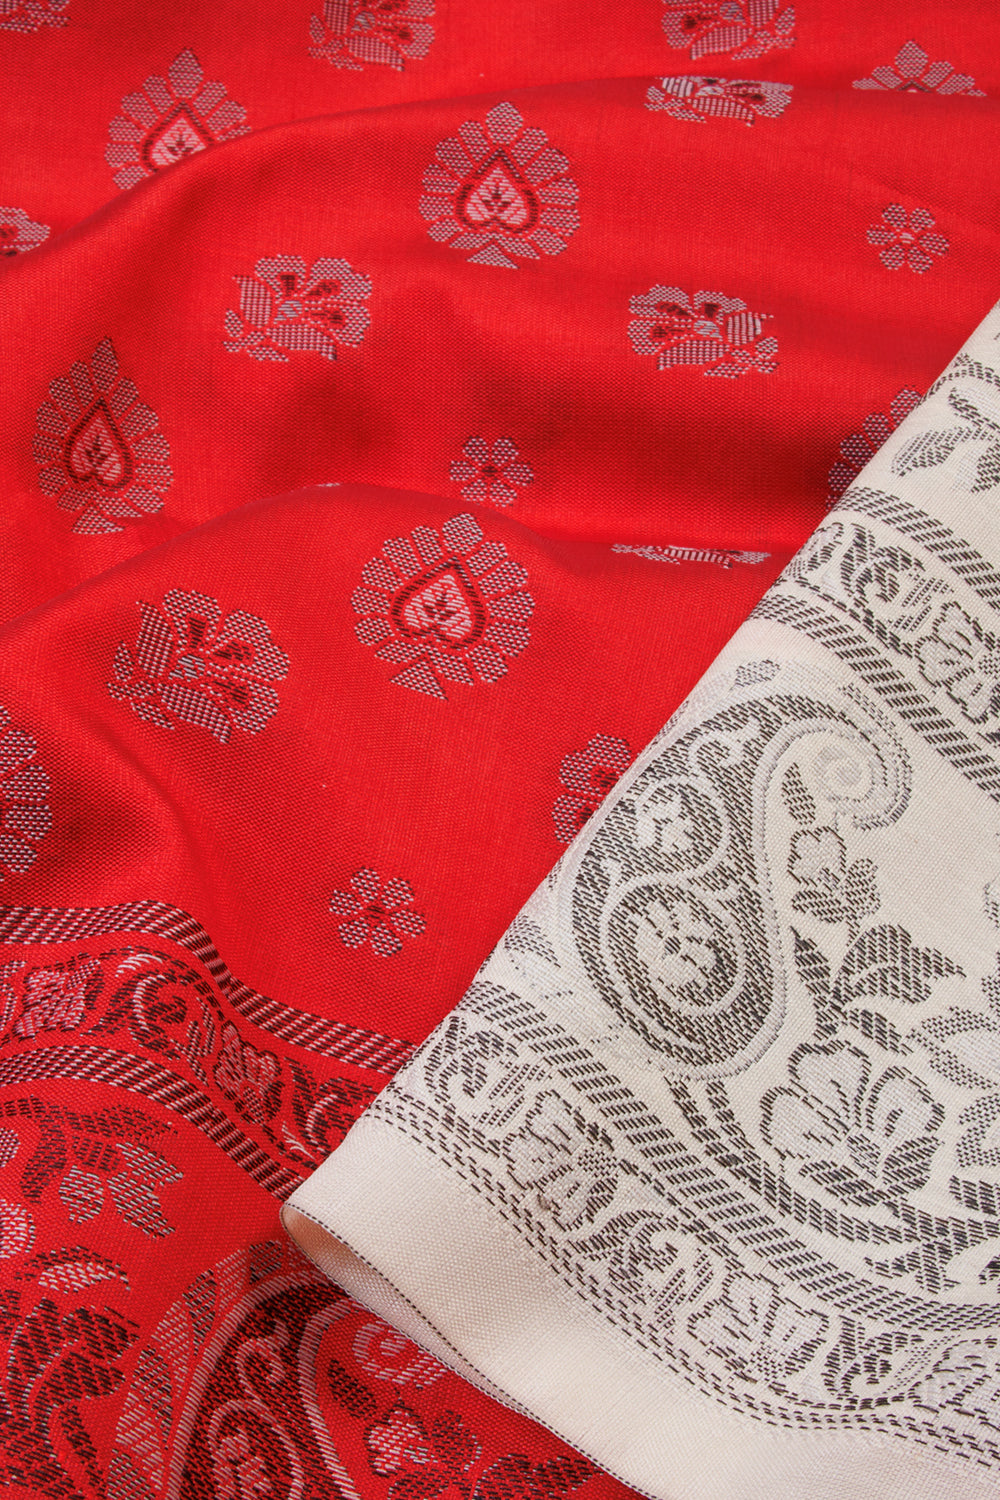 Red Handloom Himroo Silk Cotton Saree - Avishya